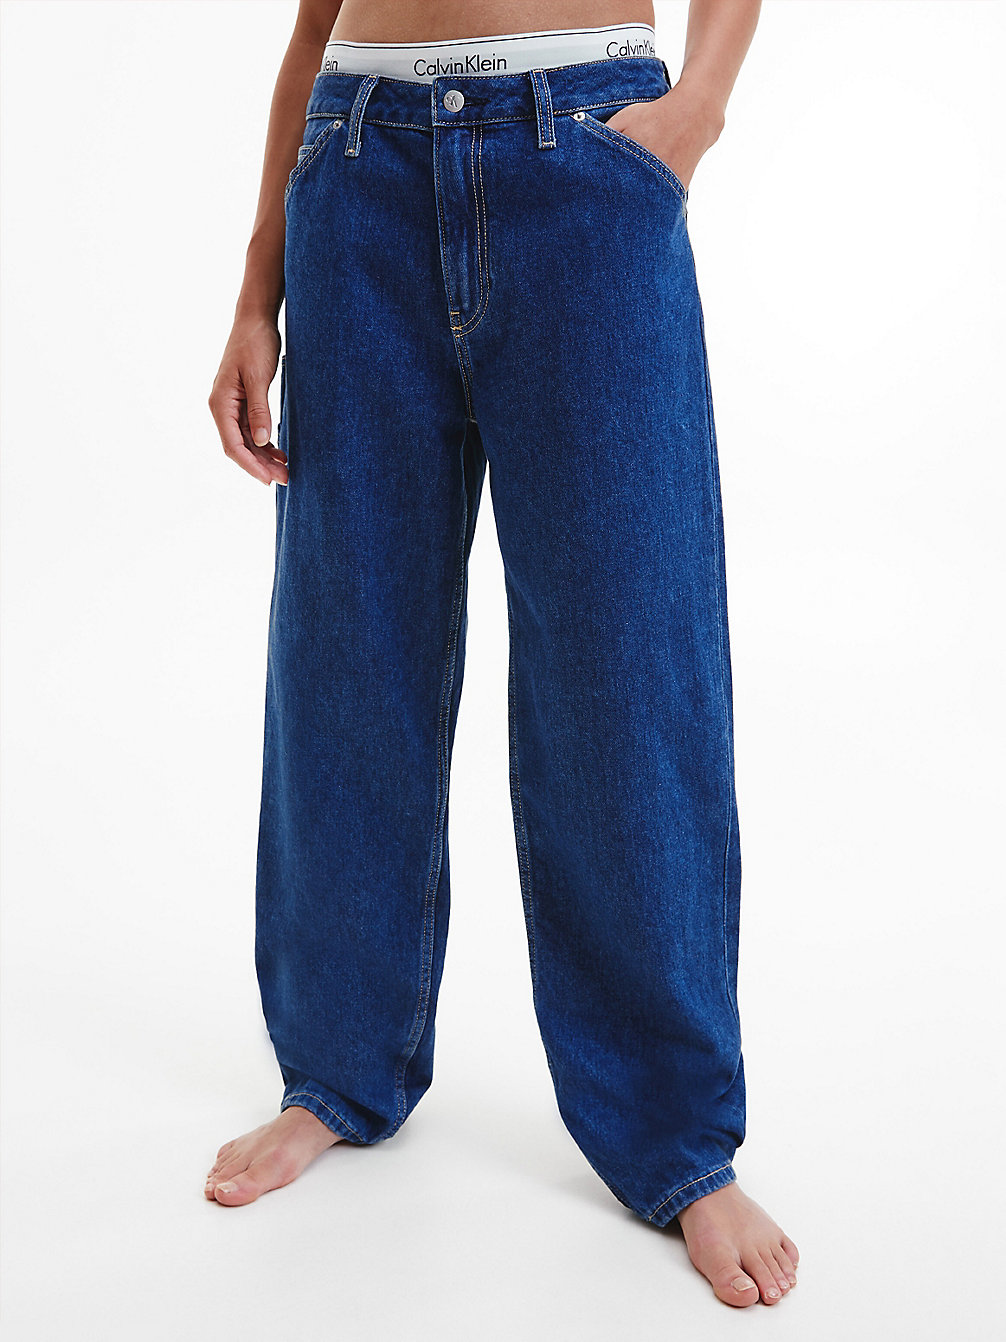 DENIM MEDIUM 90's Straight Utility Jeans undefined donna Calvin Klein